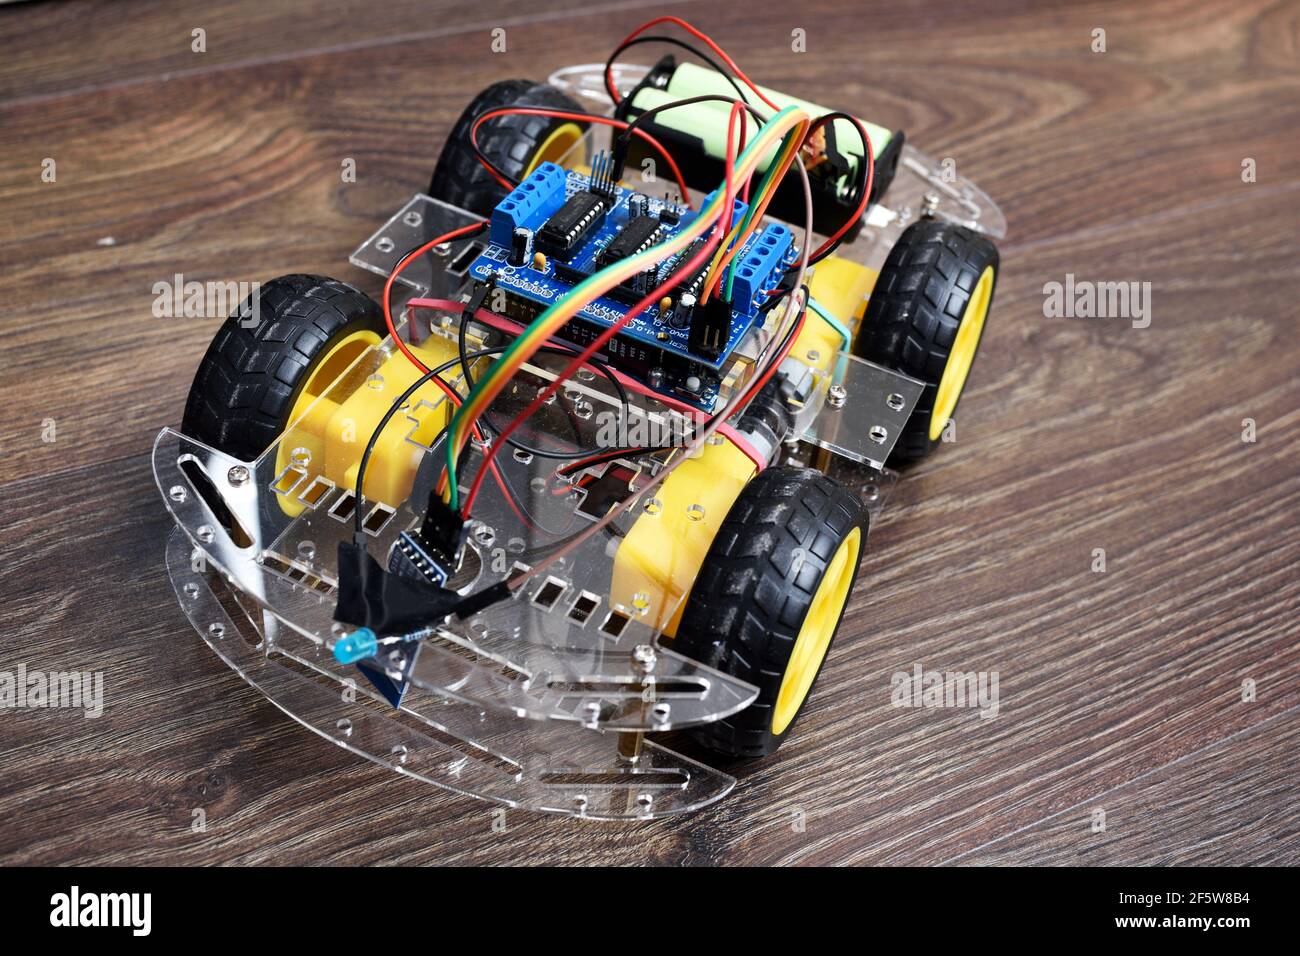 Laboratorio Publicidad cartucho Proyecto Arduino - coche con control remoto con módulo bluetooth. Coche con  4 motores y controlador Fotografía de stock - Alamy